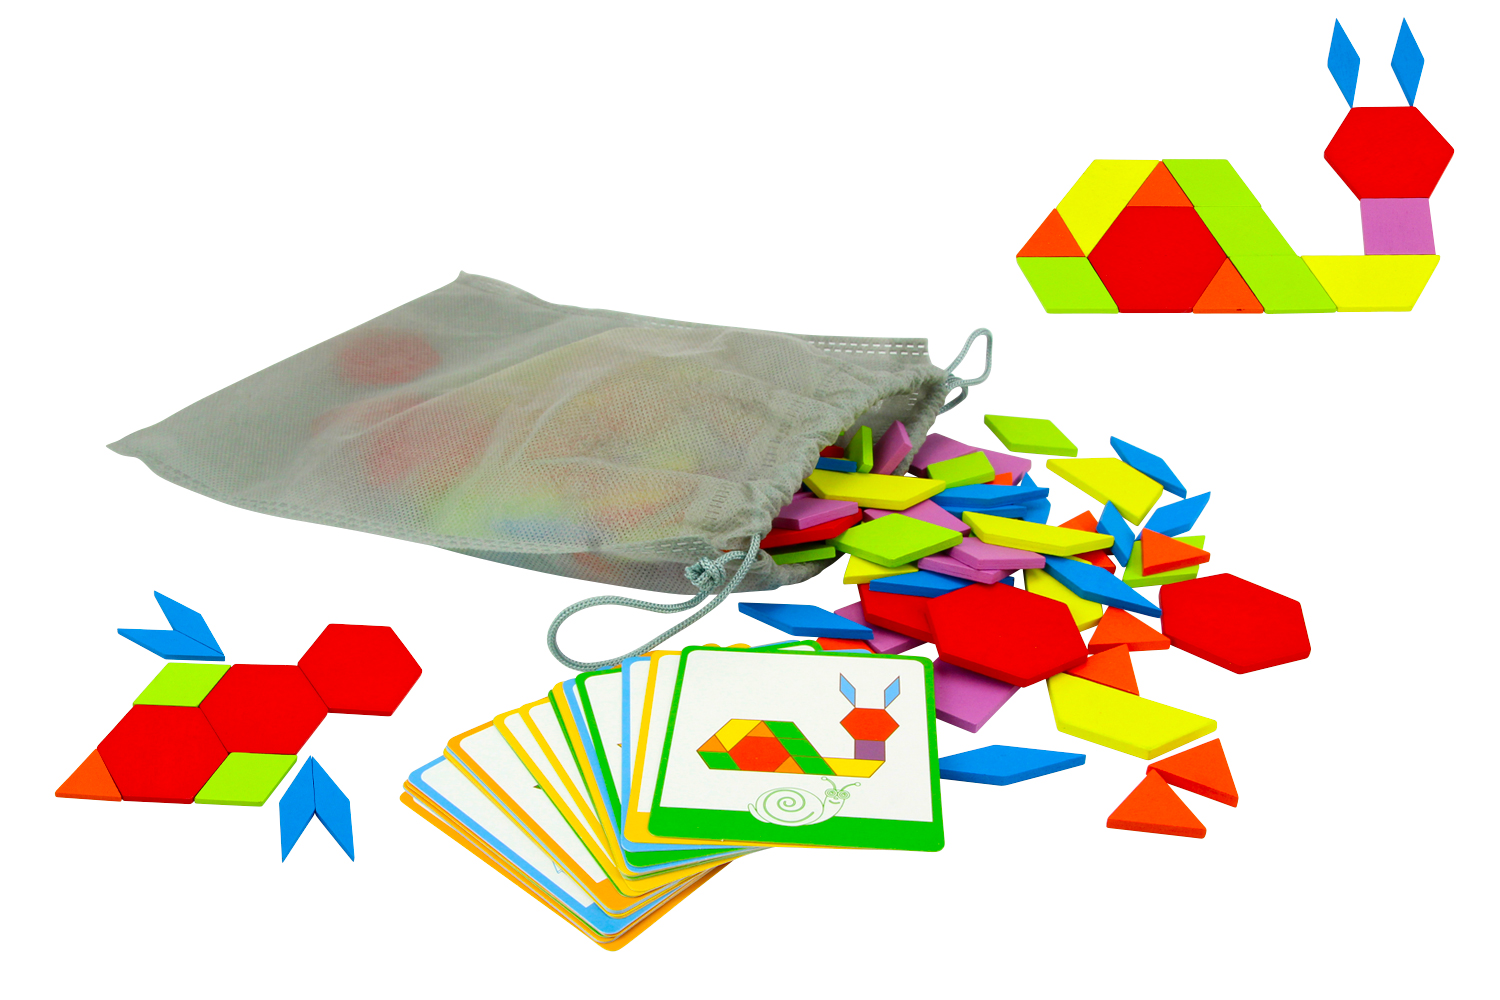 Puzzle 3D en bois coloré éducatif pour enfants - Tangram et jeu de mat –  Montessori Facile